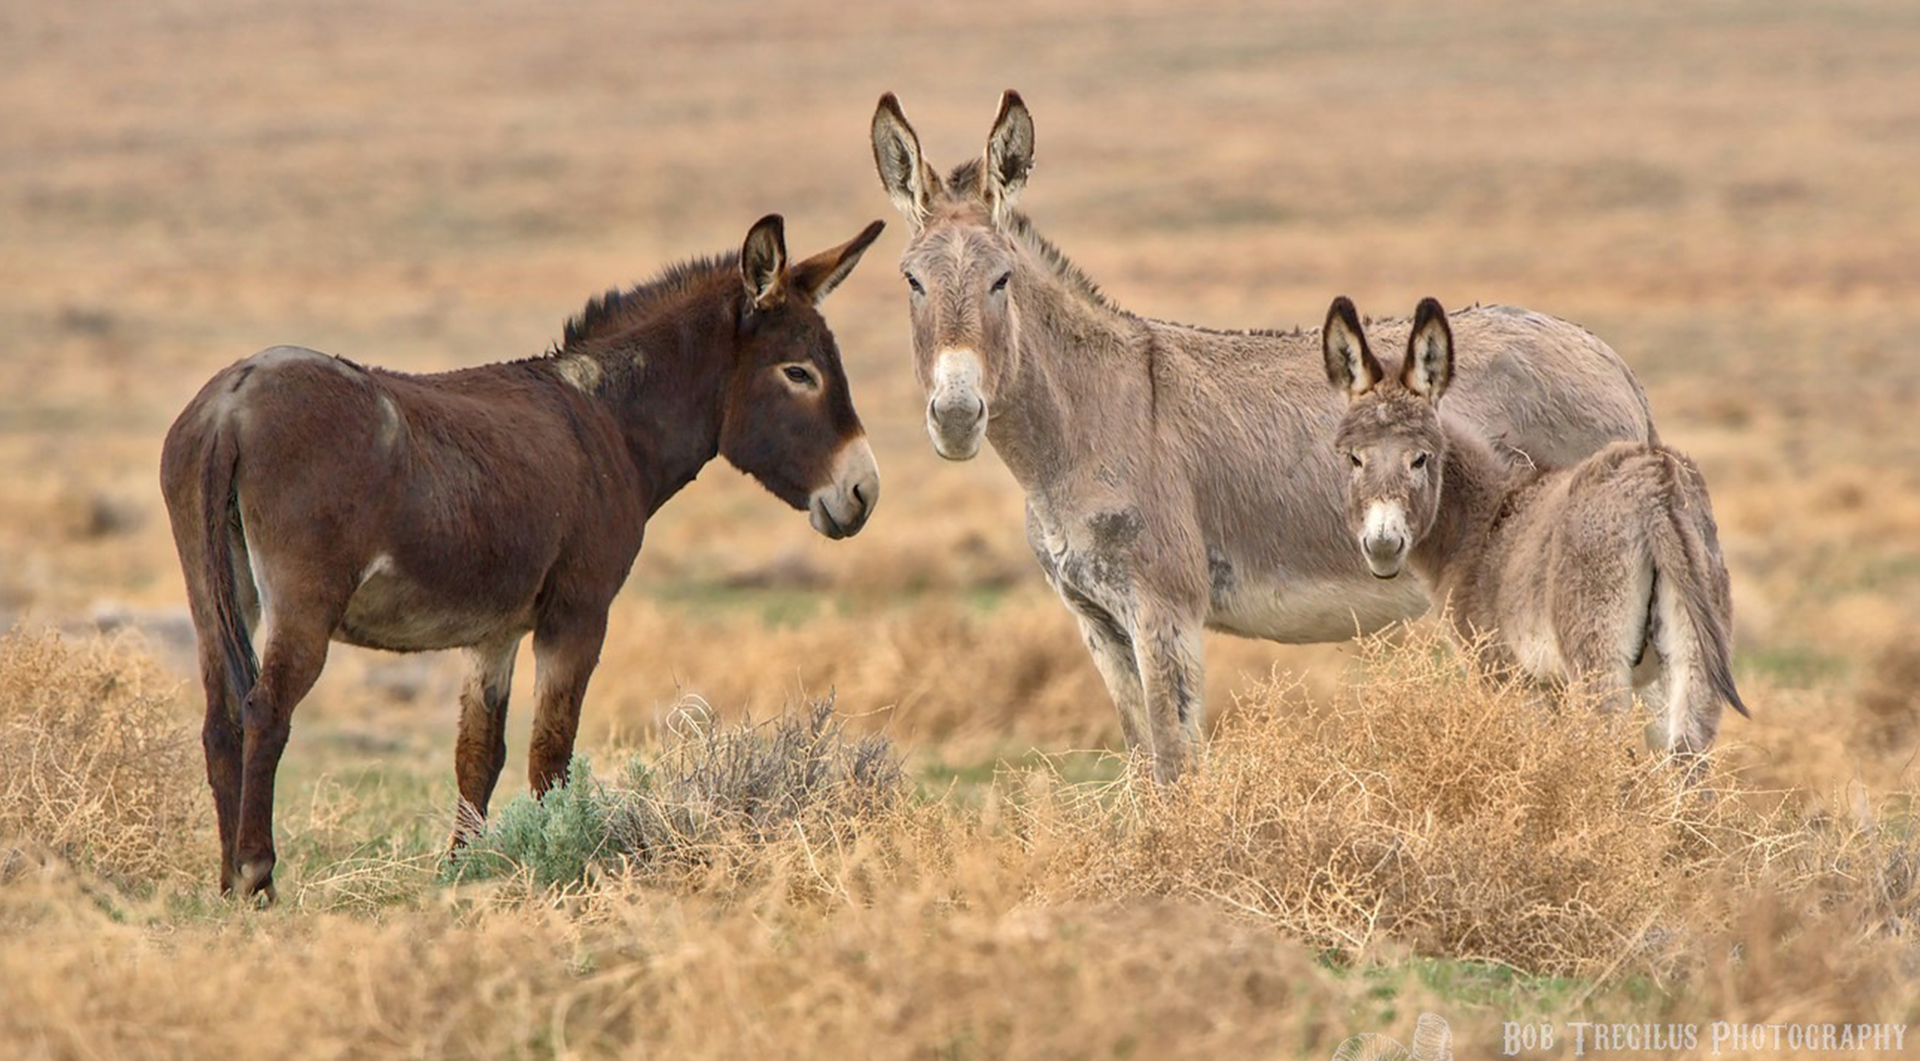 Wild burros-Bob Tregilus photo